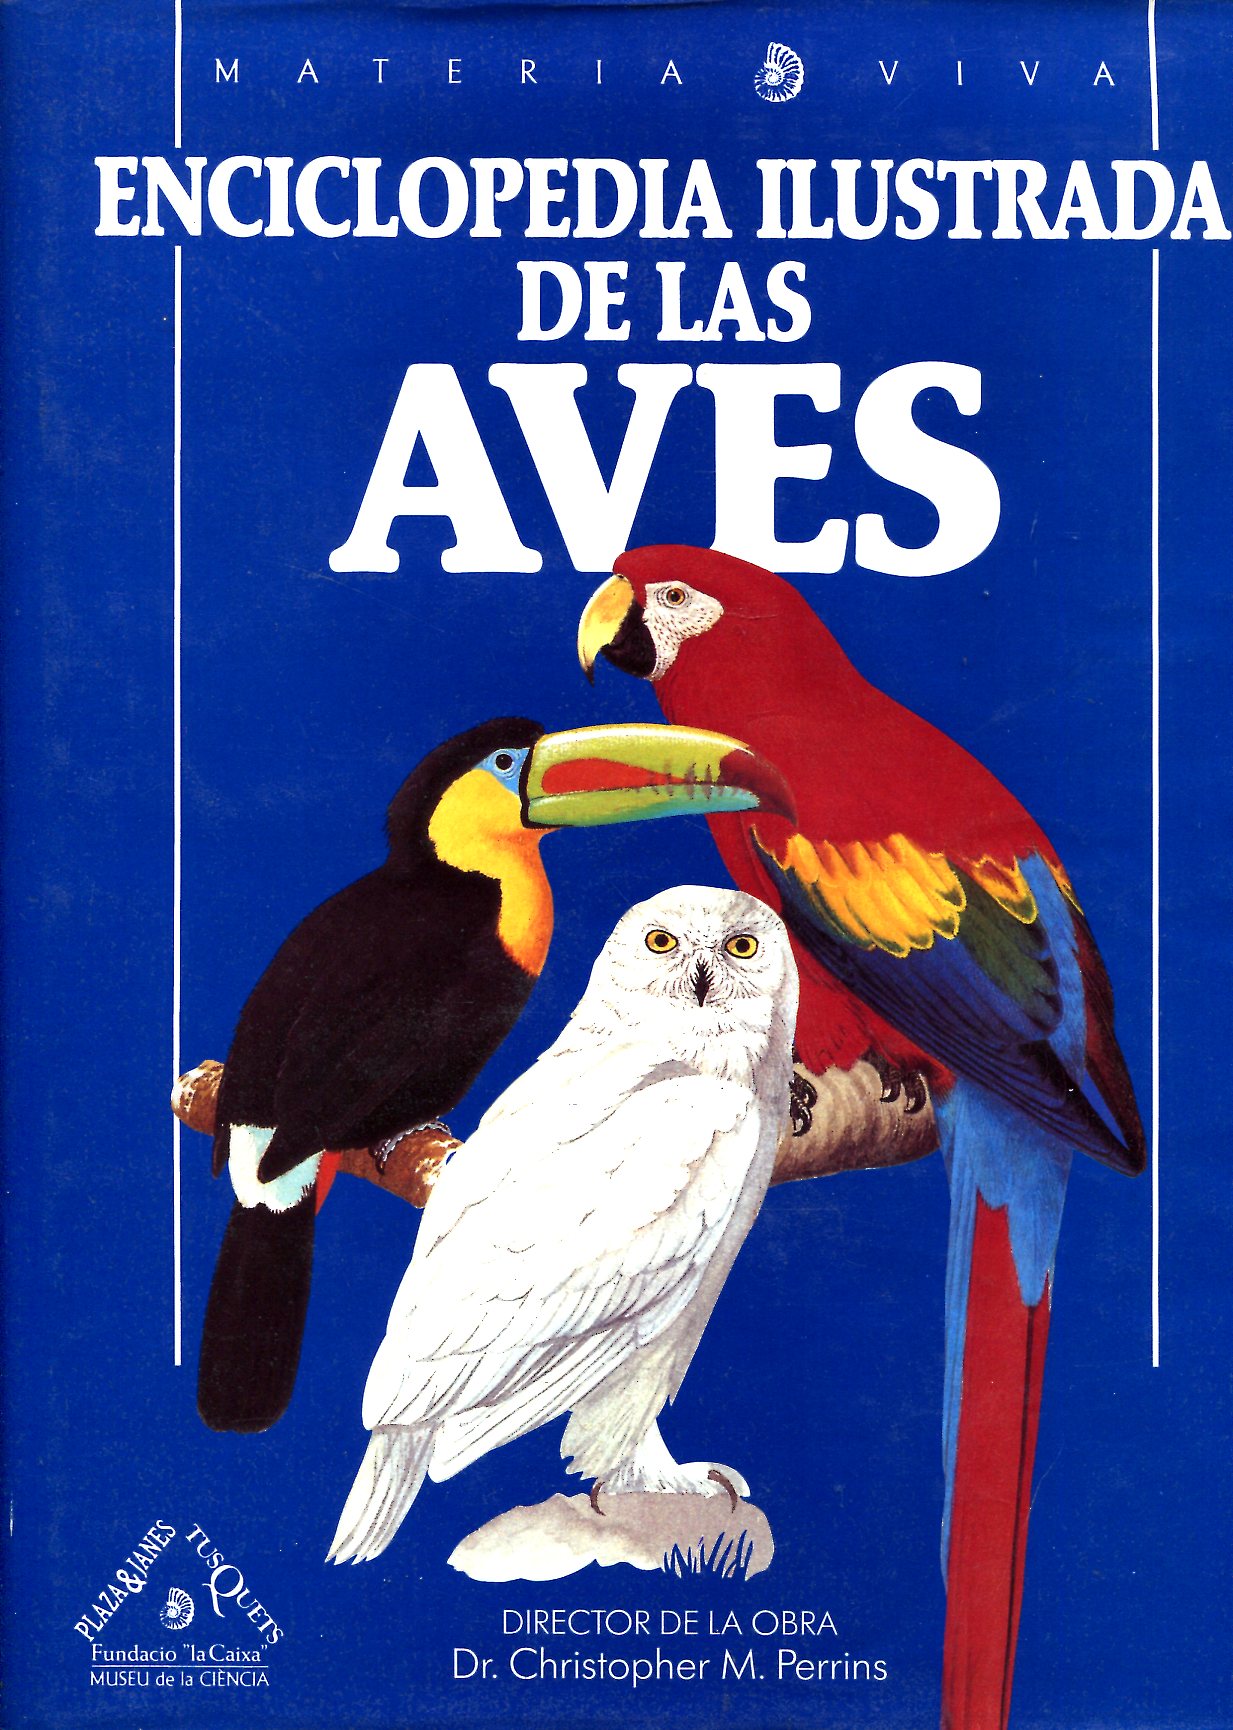 absceso Riego Redada Enciclopedia ilustrada de las aves by Director de la obra : Dr. Christopher  M. Perrins | Sylvain Paré